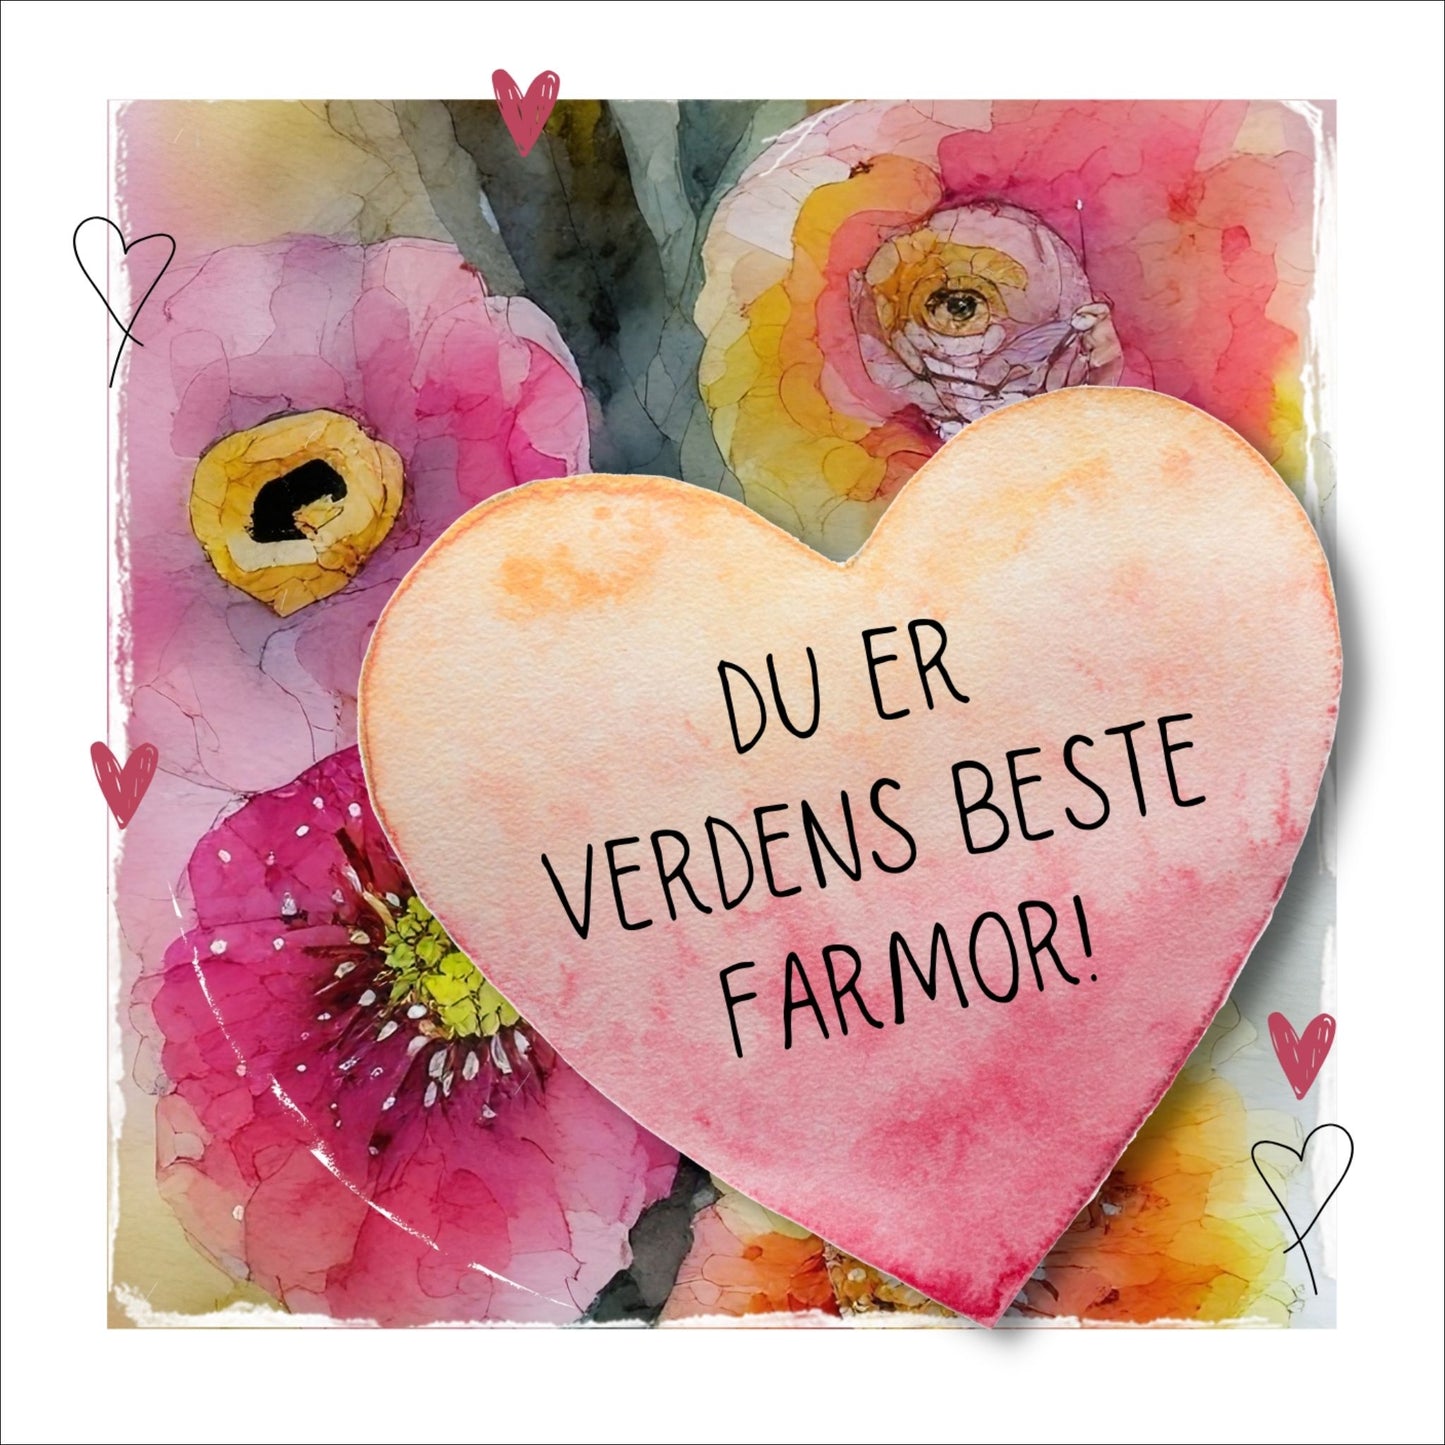 Grafisk plakat med et rosa hjerte påført tekst "Du er verdens beste farmor". Bagrunn i cerise og guloransje blomster. Kortet har en hvit kant rundt på 1,5 cm.